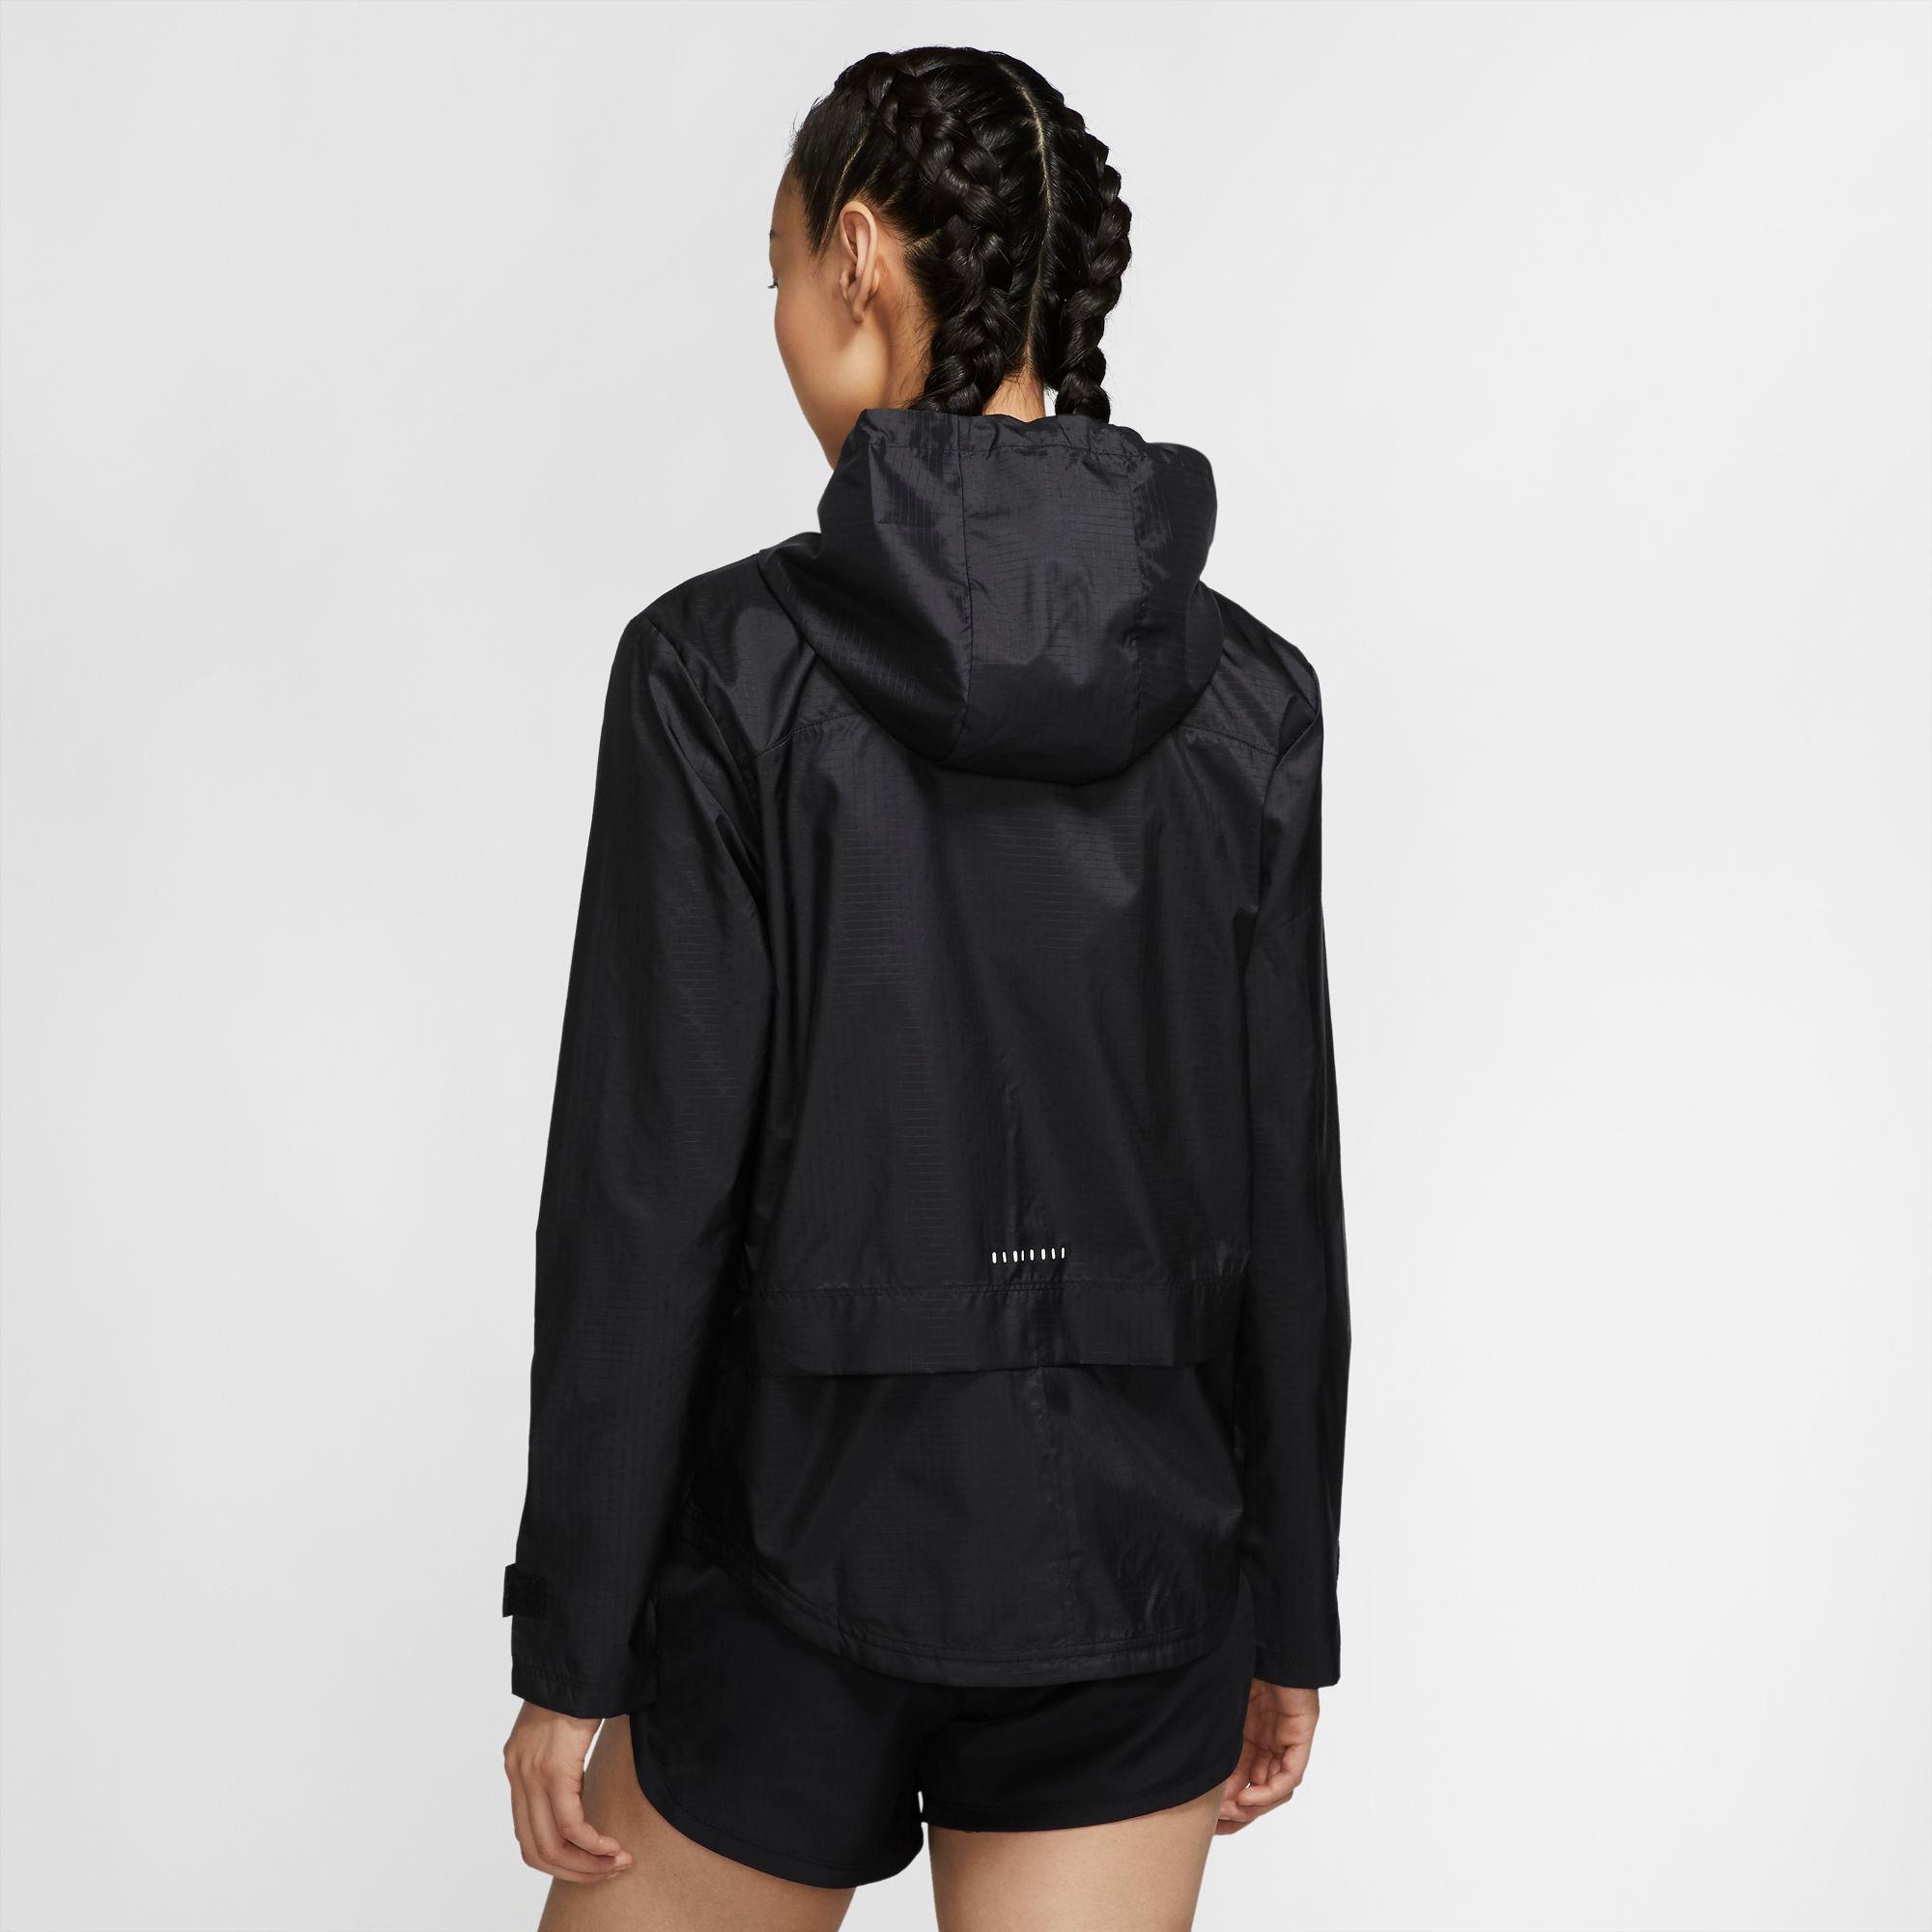 Nike Essential im black-reflective silv Laufjacke SportScheck Damen Online kaufen Shop von